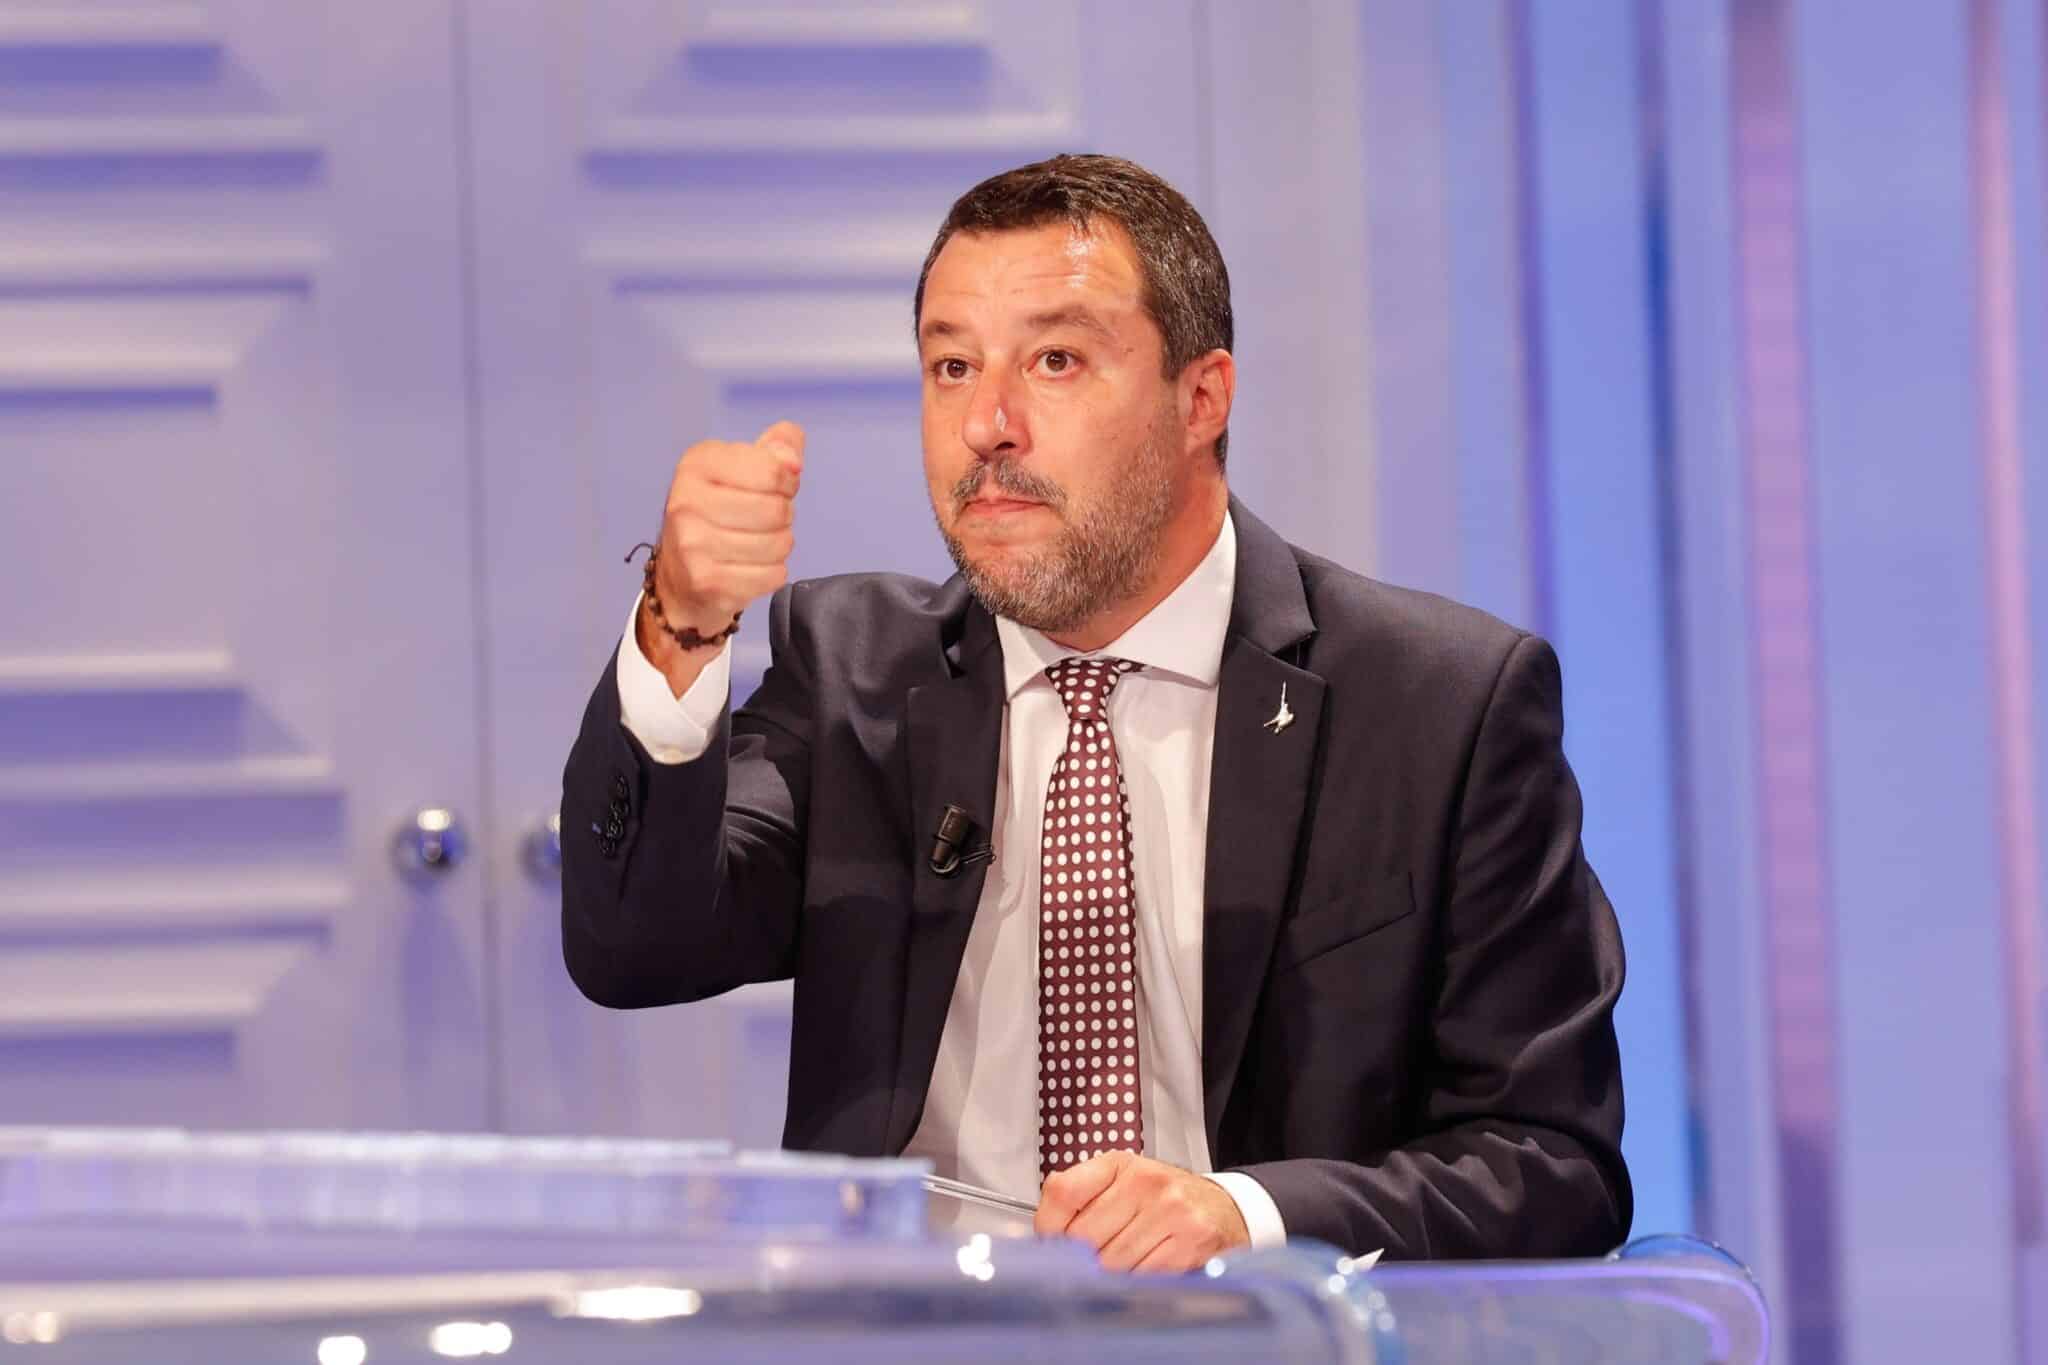 Matteo Salvini asiste al programa de televisión italiano Rai 1 'Porta a Porta' presentado por el periodista italiano Bruno Vespa (invisible), en Roma